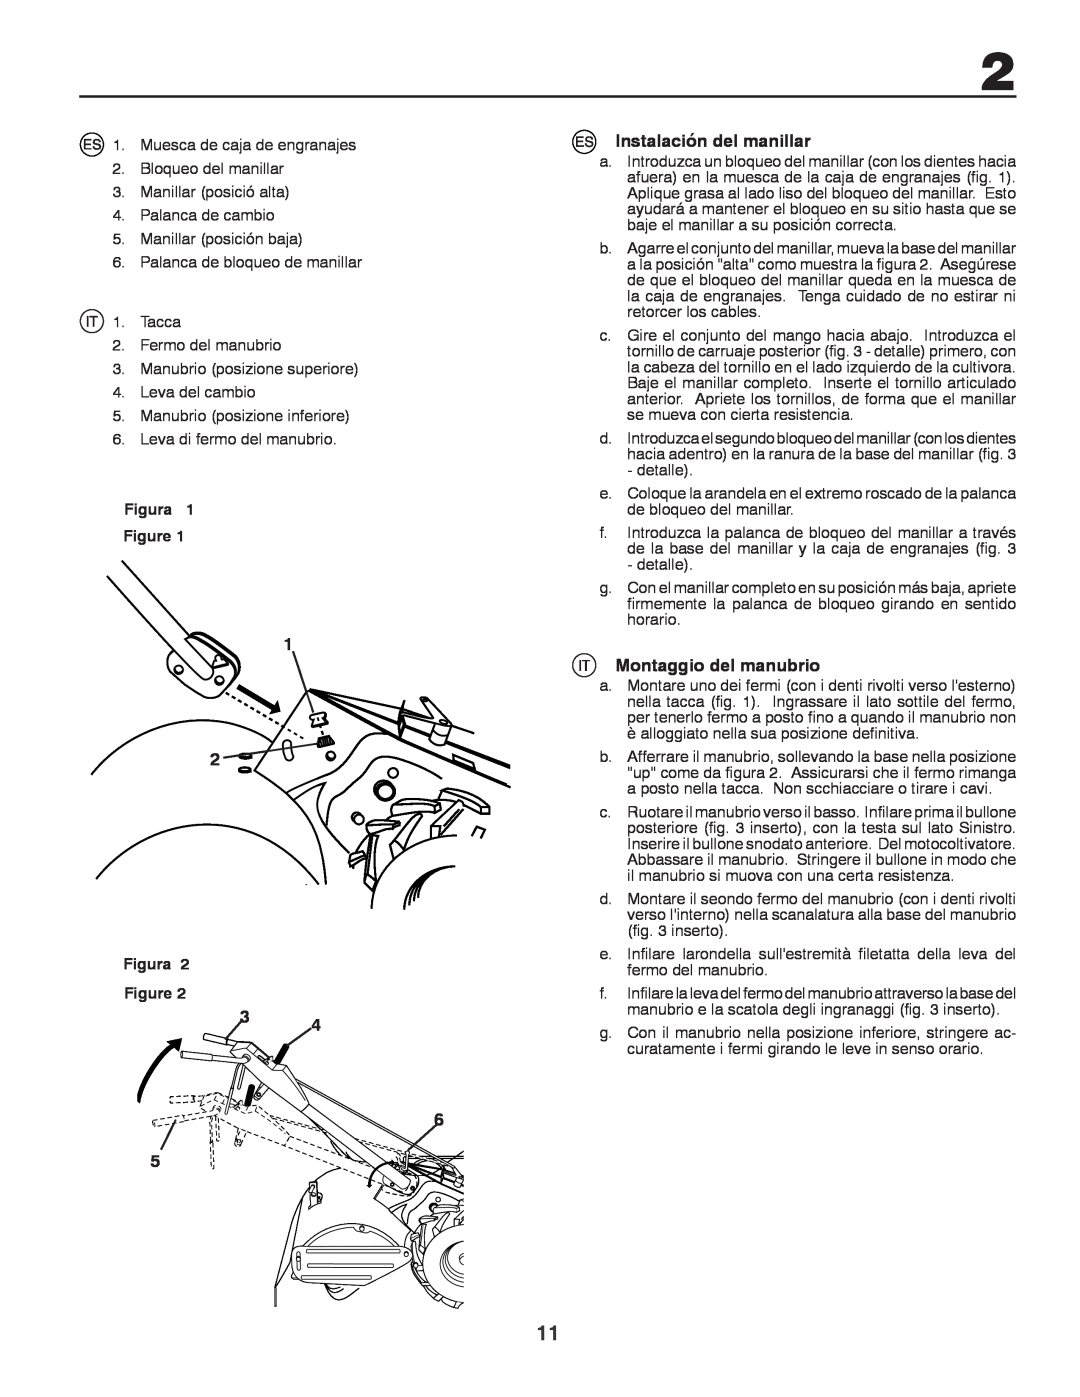 Husqvarna CRT81 instruction manual Instalación del manillar, Montaggio del manubrio, Figura 